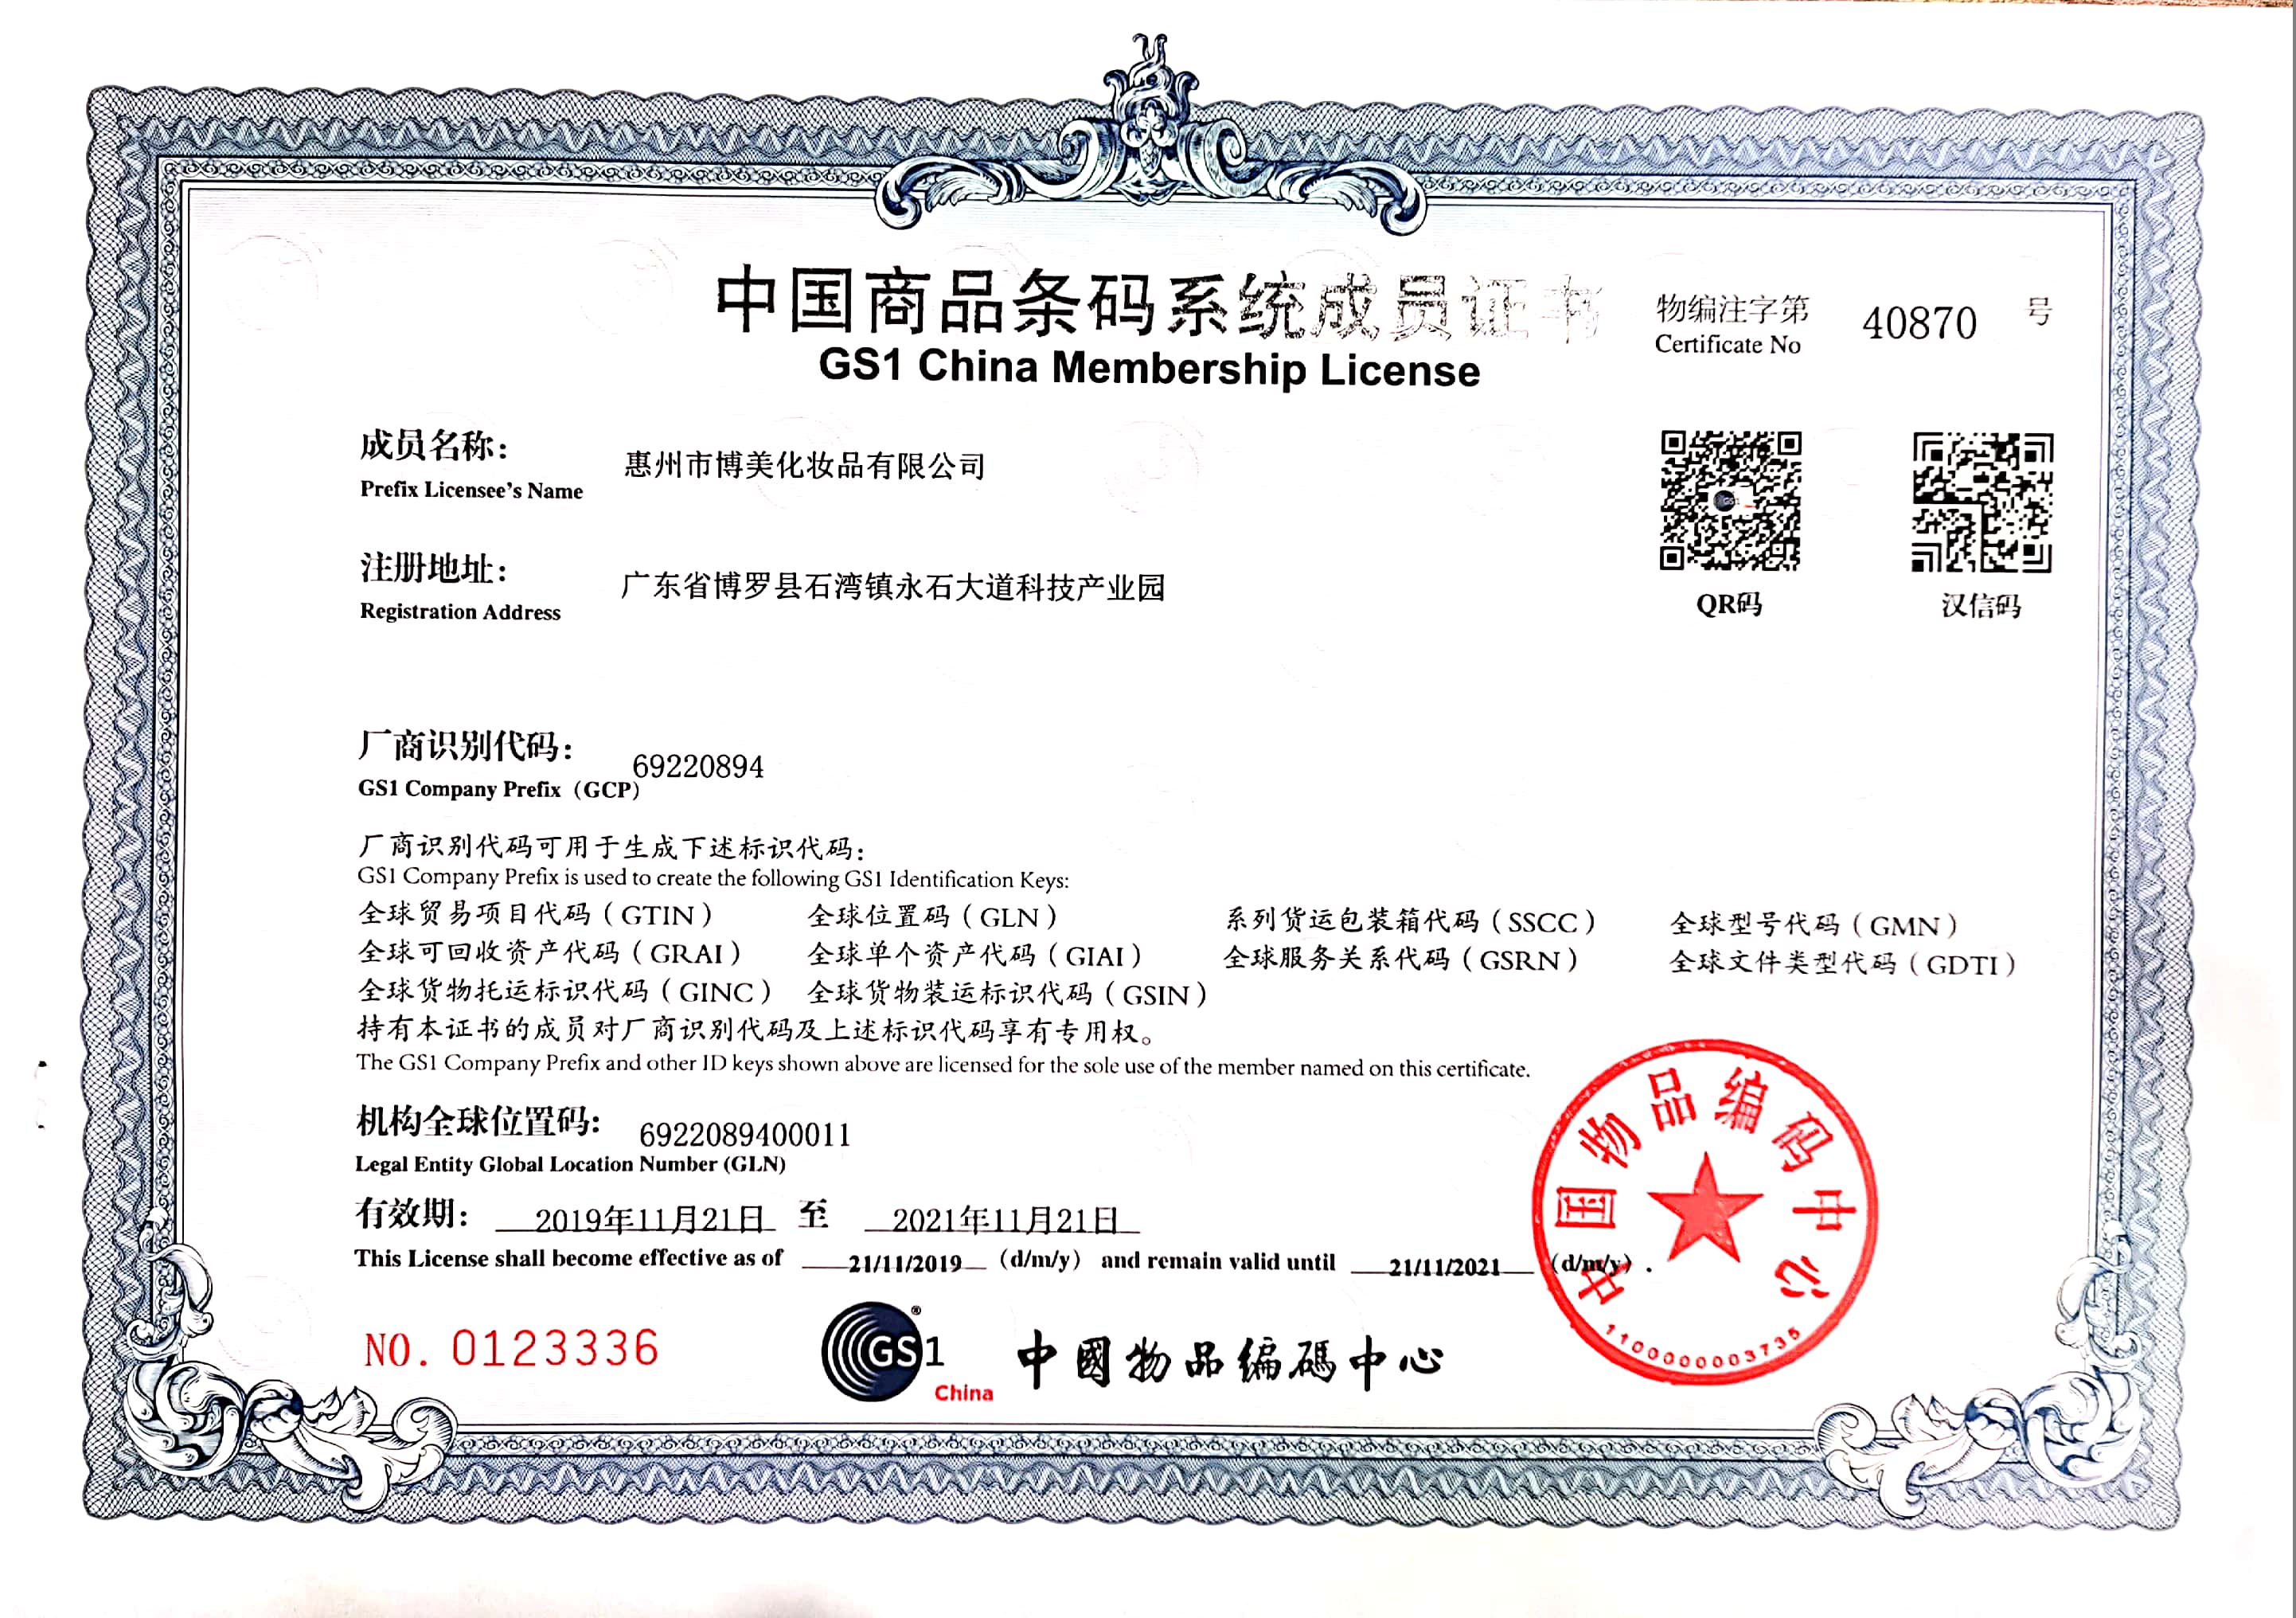 Certificat de membre du système de codes à barres des produits de la Chine 2019-2021